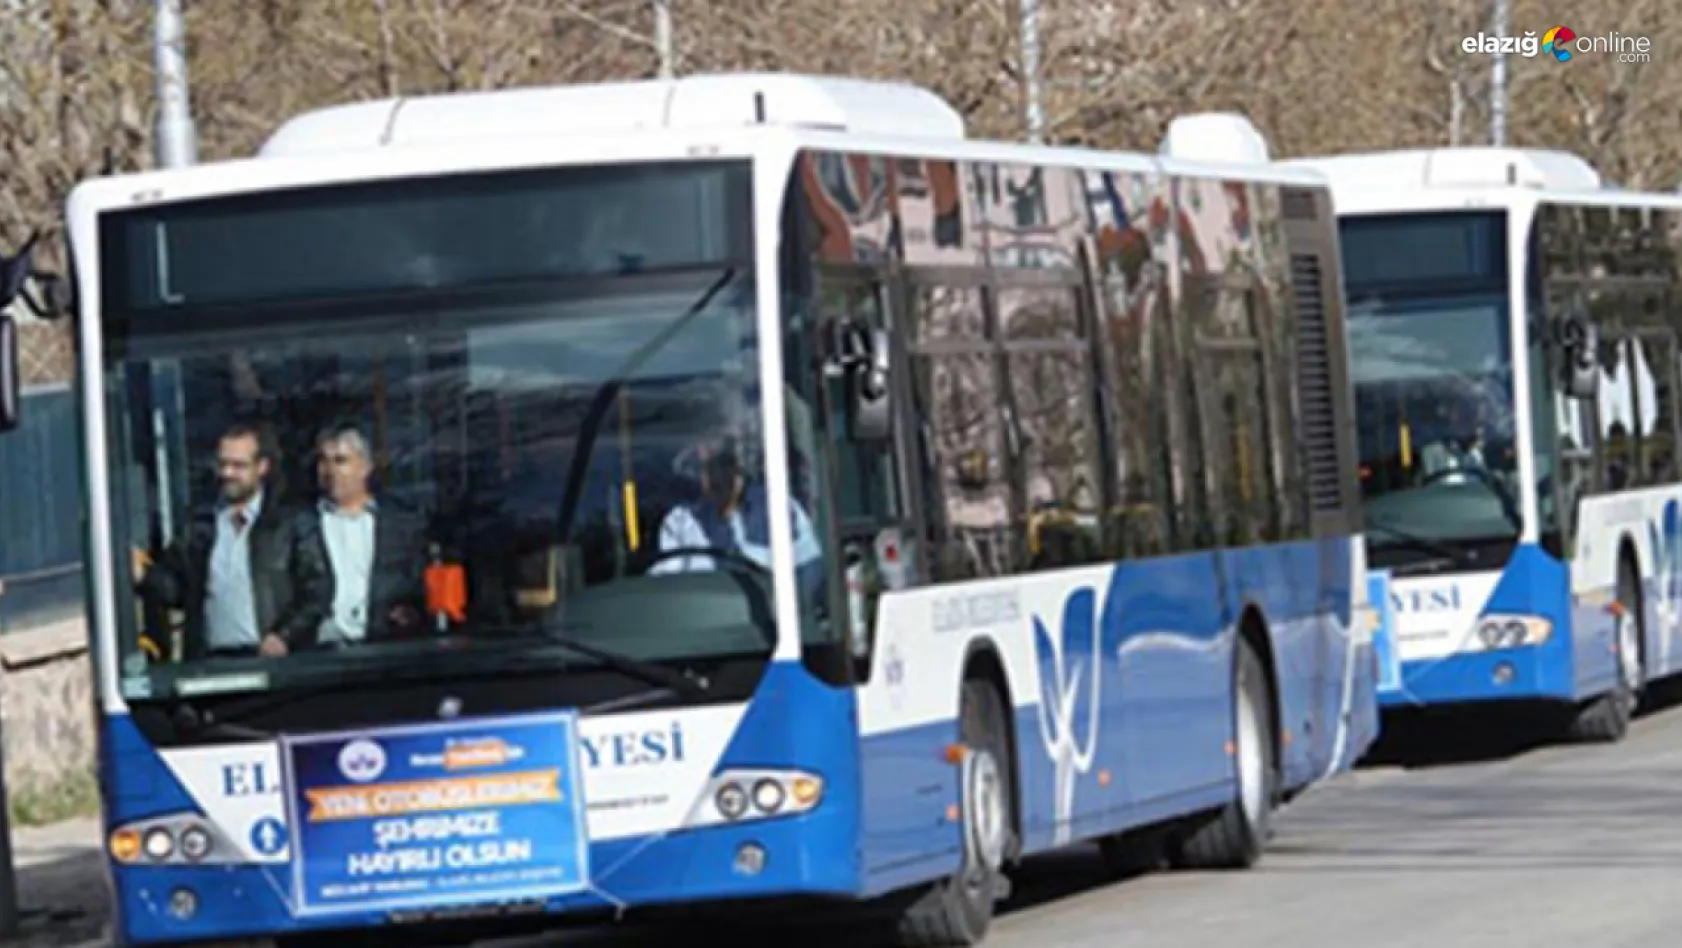 Elazığ Belediyesinden otobüs sefer saatlerine yeni düzenleme